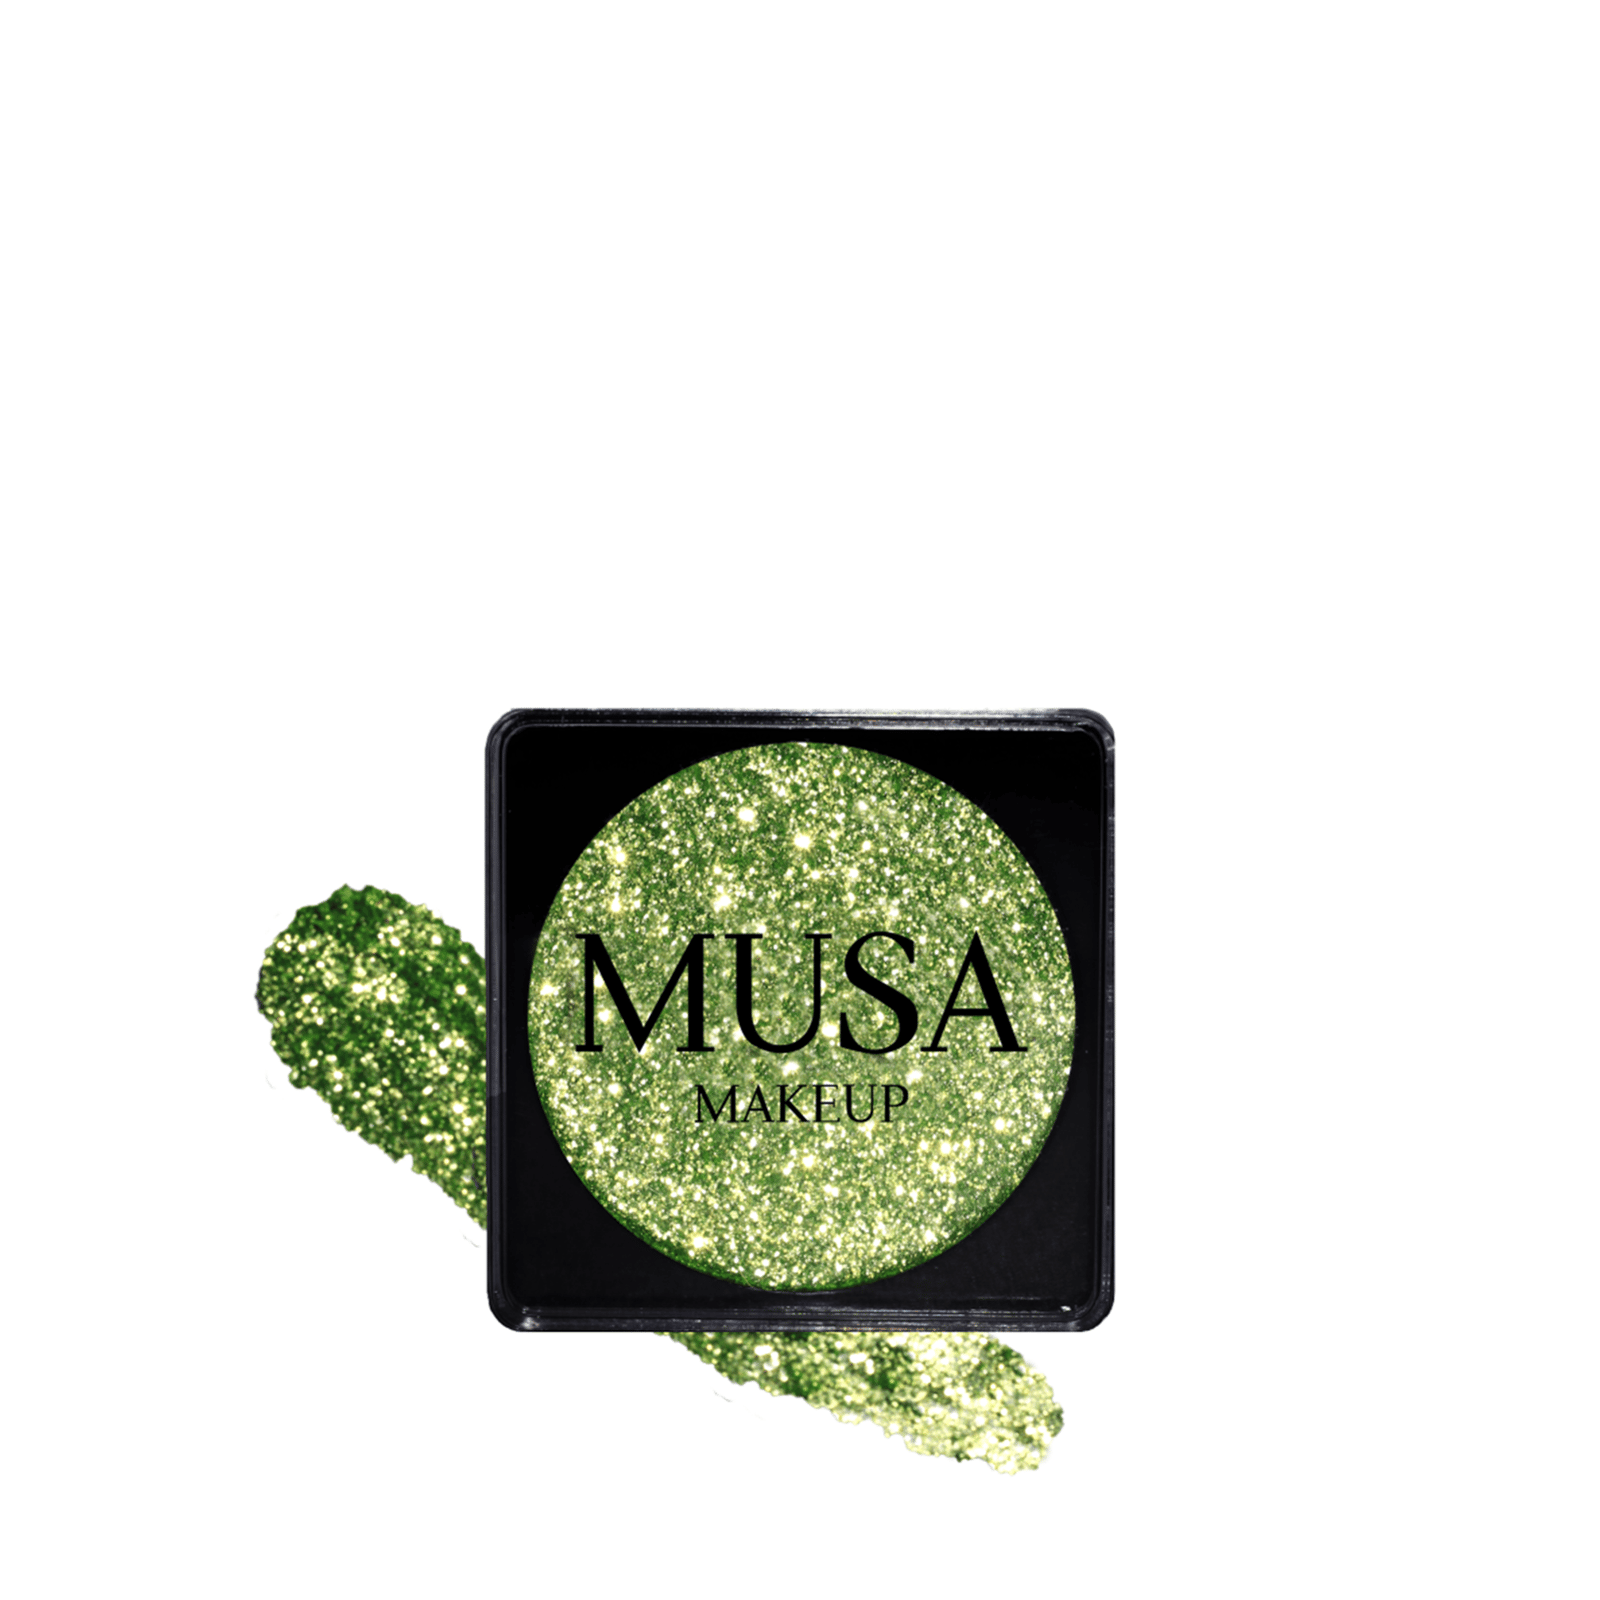 MUSA Makeup Creamy Glitter Savage 4g (0.14 oz)